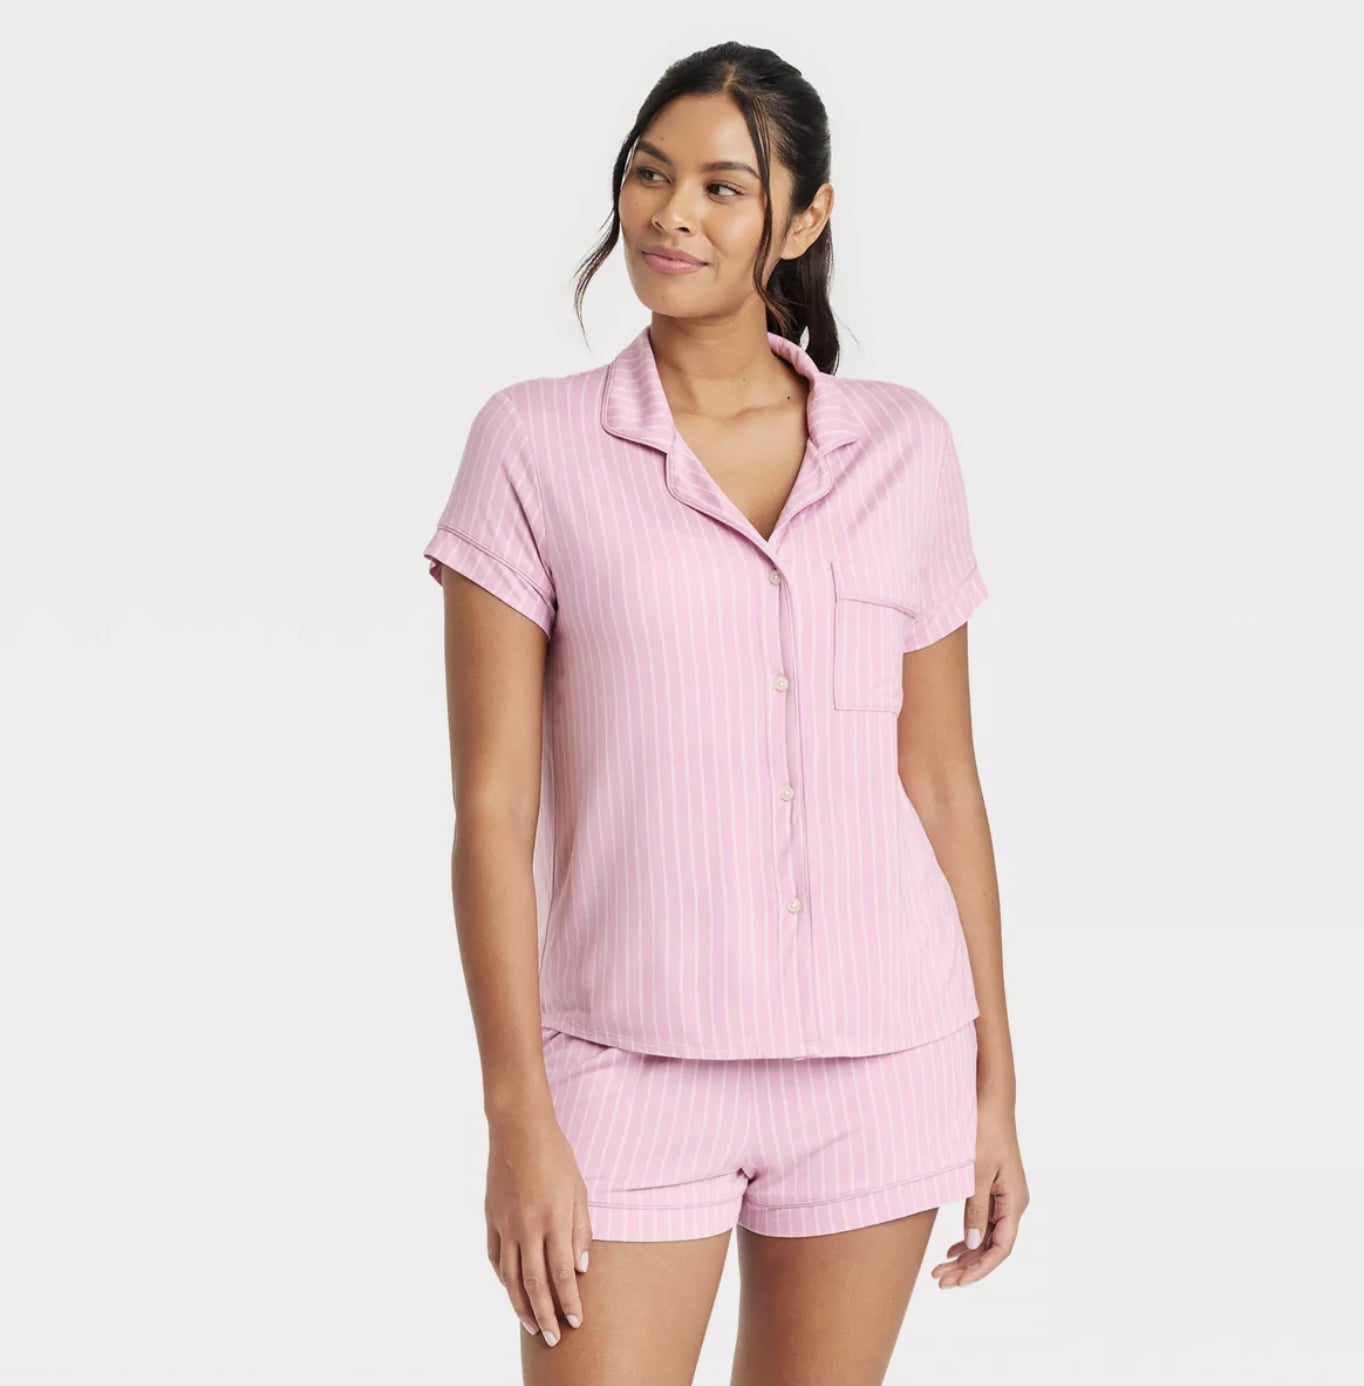 Ralph Lauren Crop Top & Boxer Striped Pajama Set in Pink